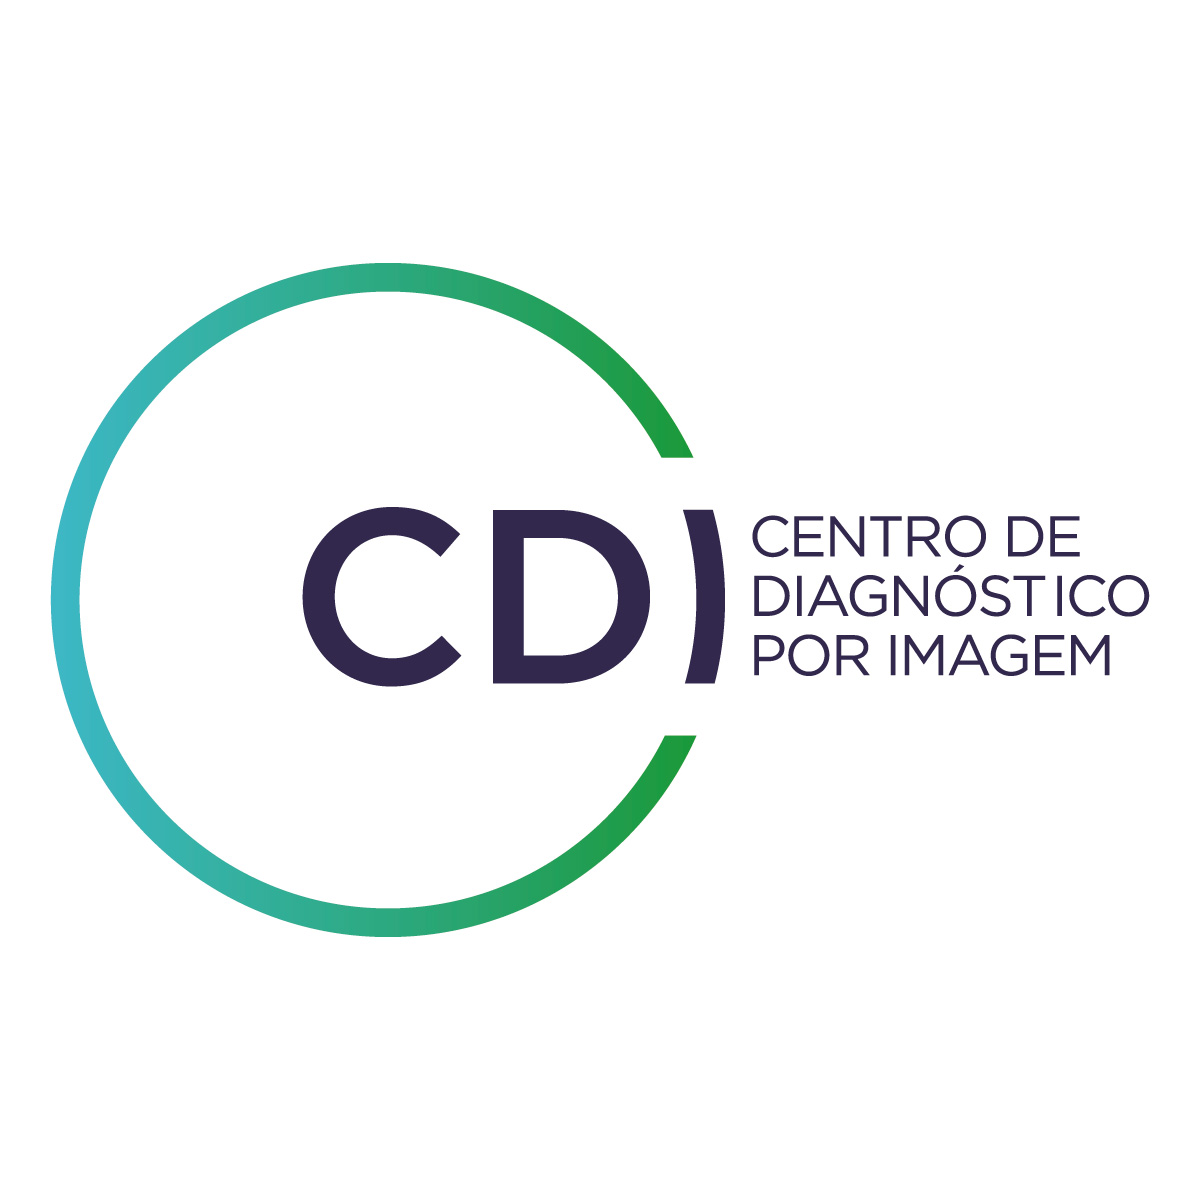 CDI – Centro de Diagnóstico por Imagem - CDI Imagem